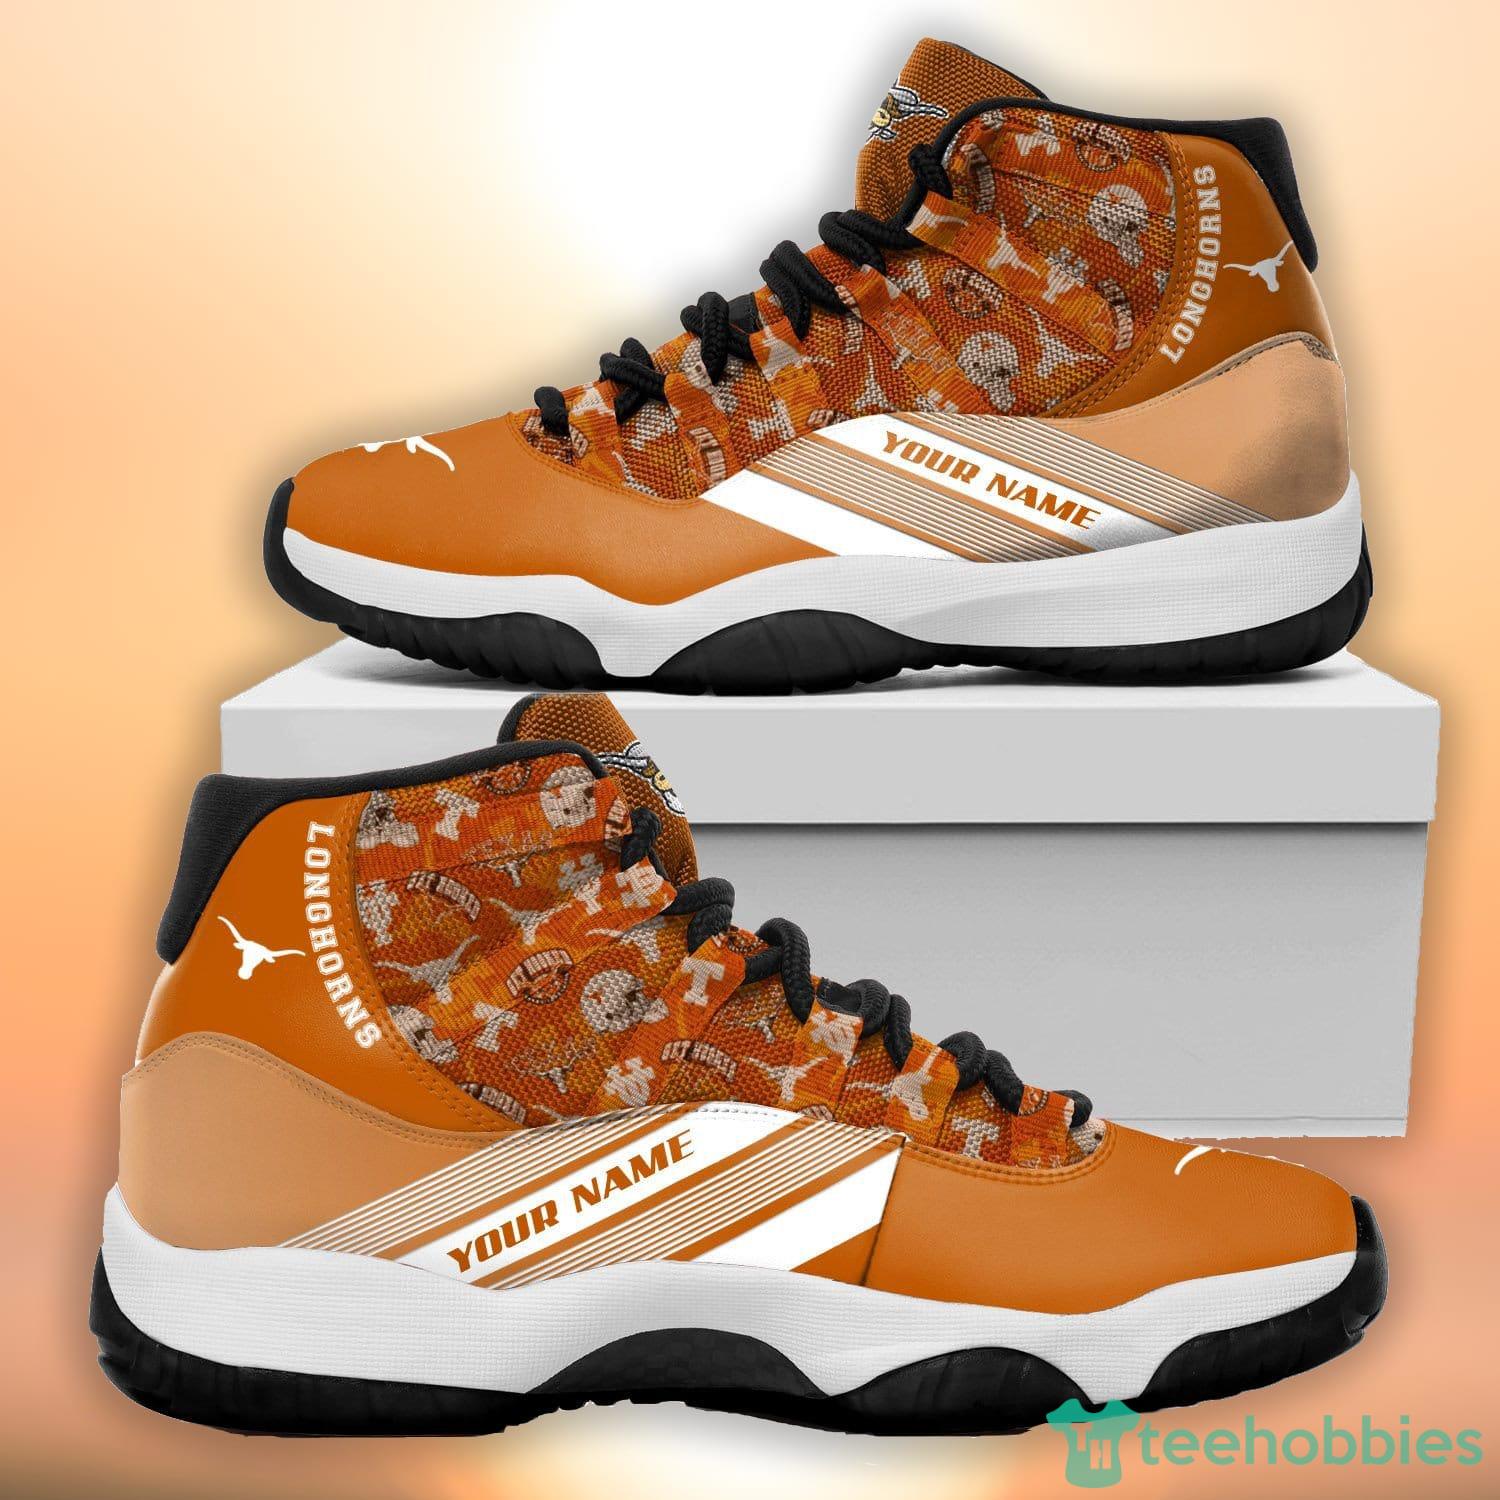 Custom Name Texas Longhorns Air Jordan 13 Sneaker Shoes - Banantees